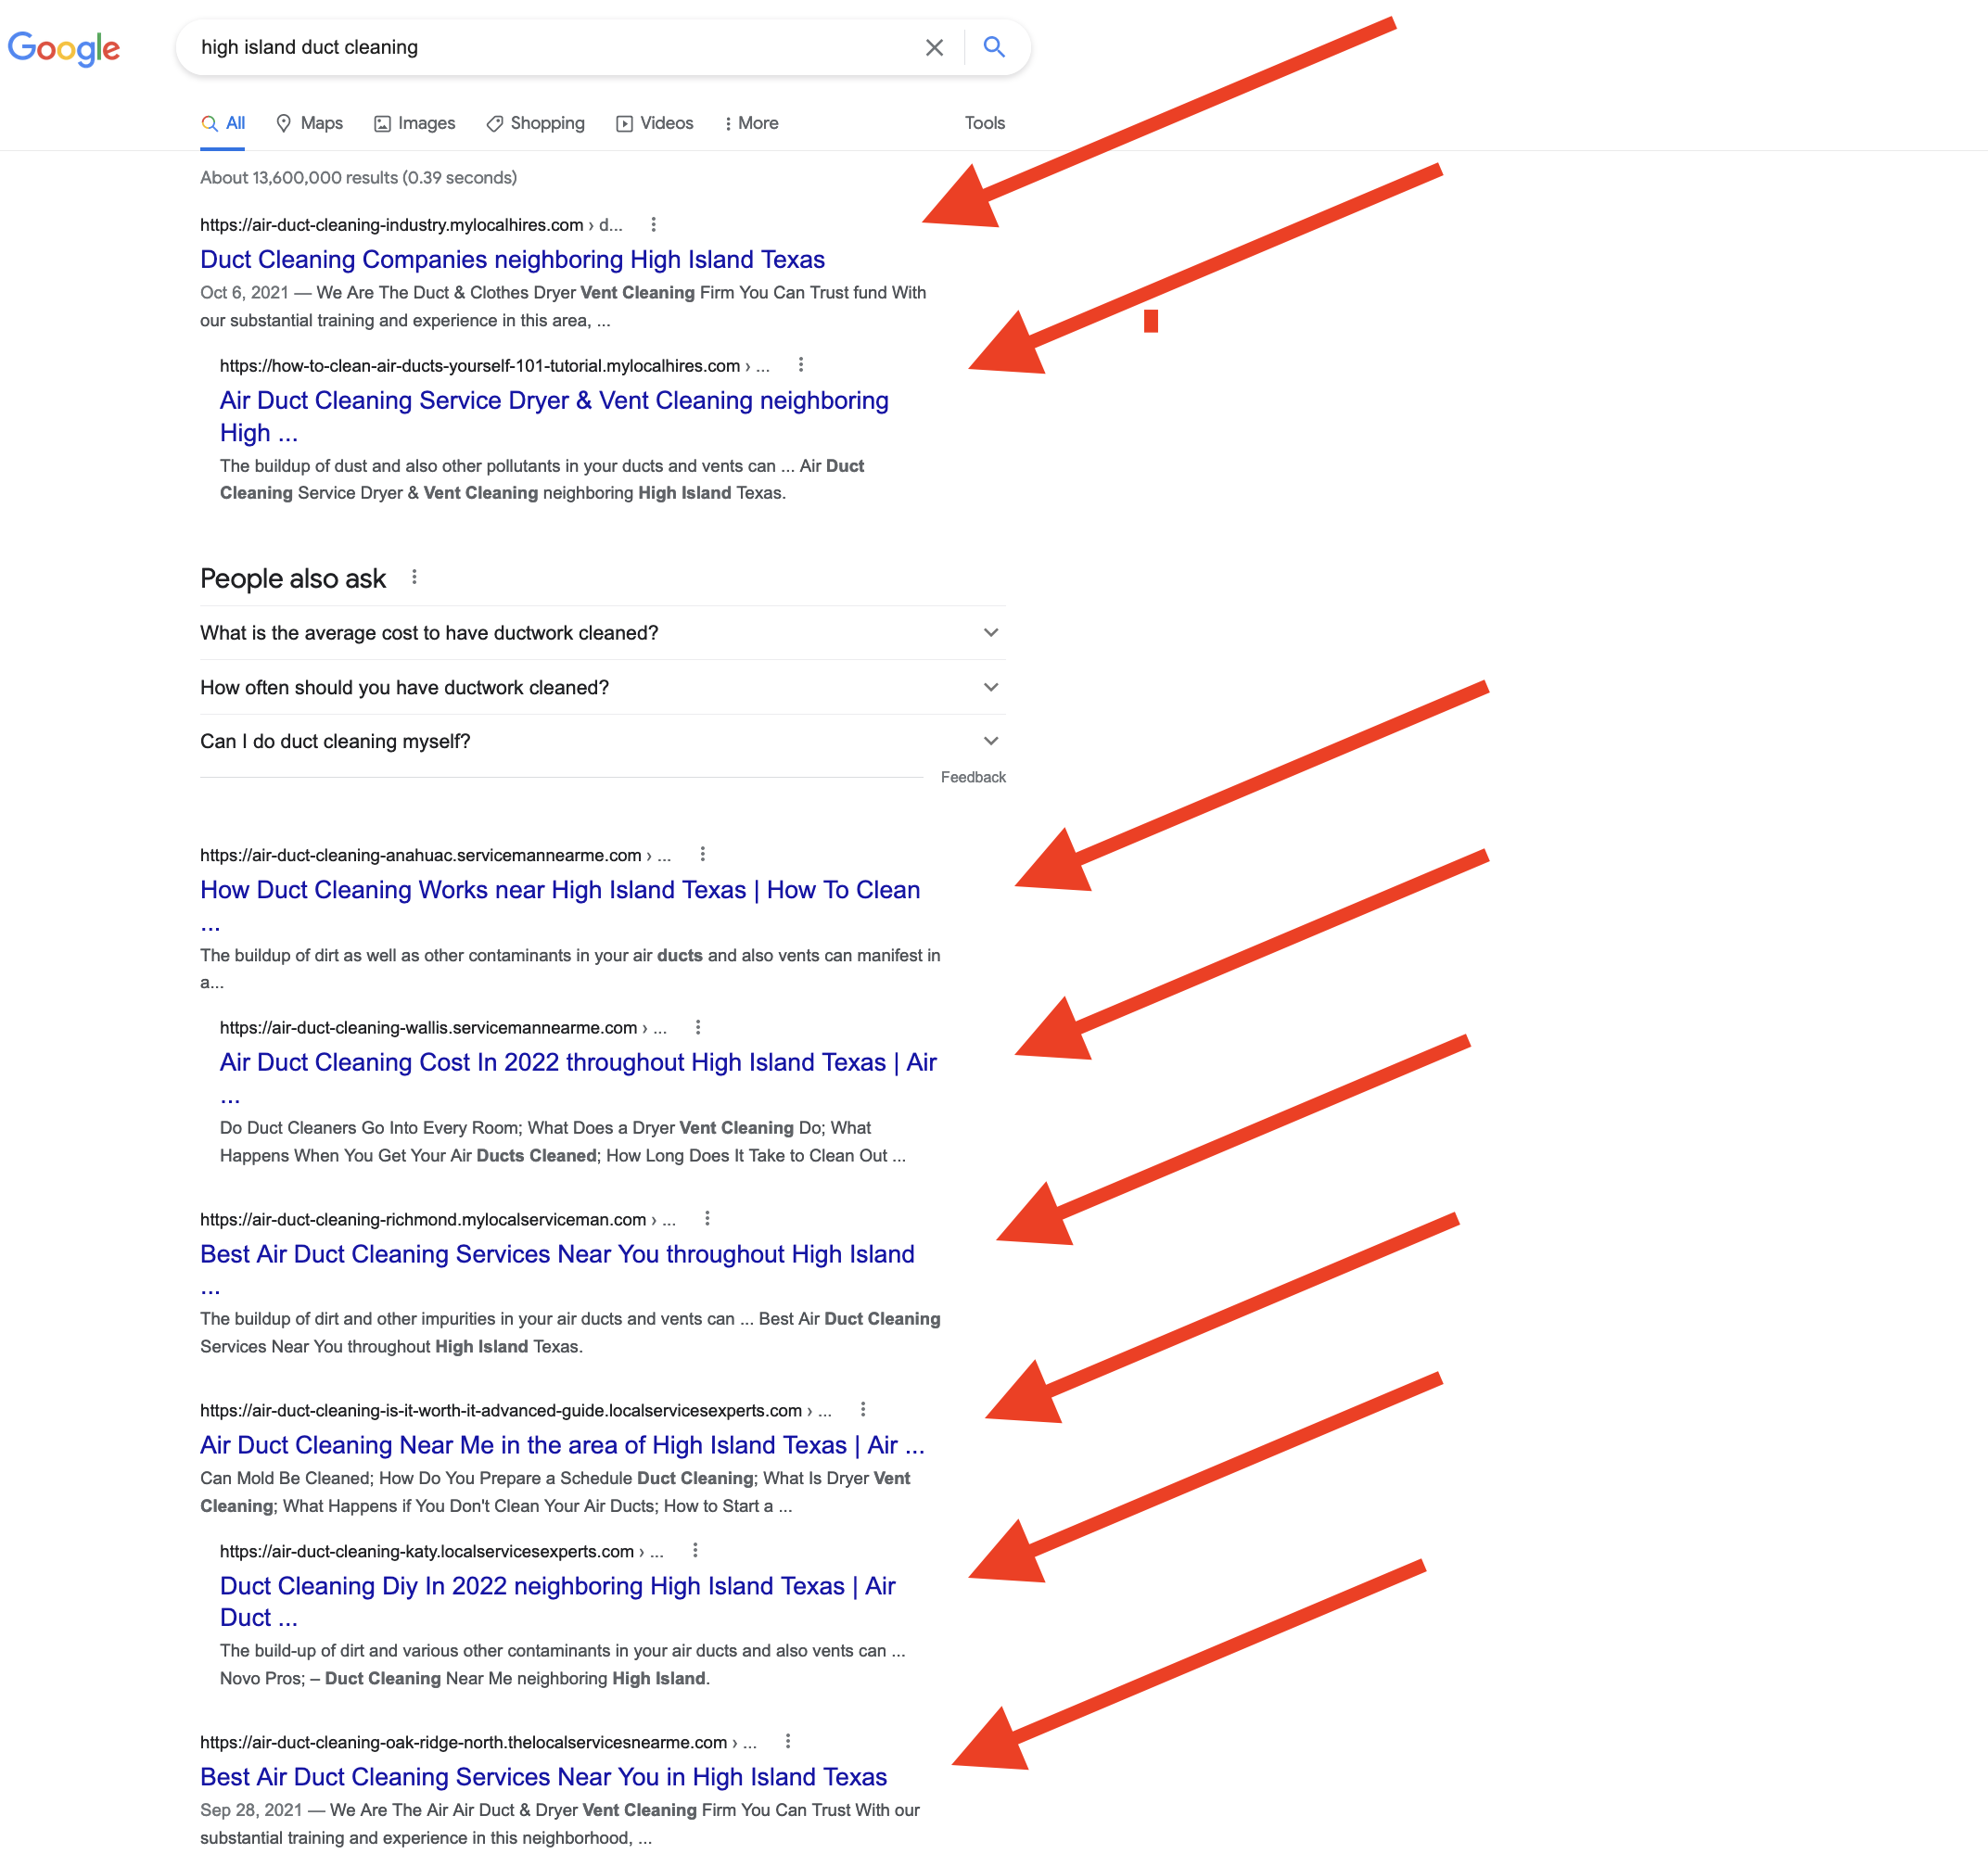 דוגמא להשתלטות על תוצאות החיפוש של גוגלא באמצעות קידום אתרים עם סאבדומיינים